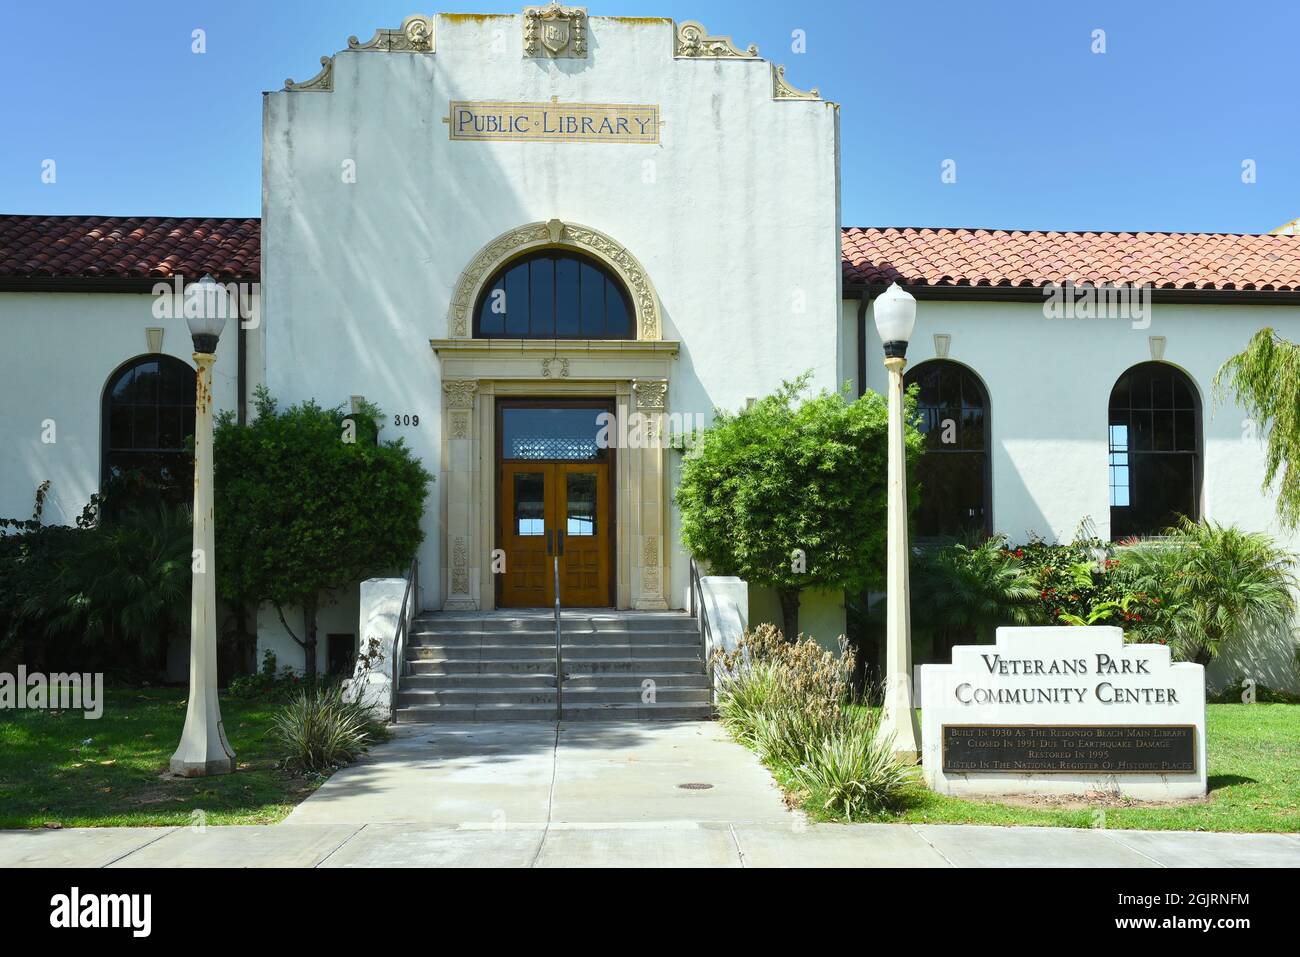 REDONDO BEACH, CALIFORNIA - 10 DE SEPTIEMBRE de 2021: El Veterans Park Community Center en el edificio de la biblioteca antigua. Foto de stock